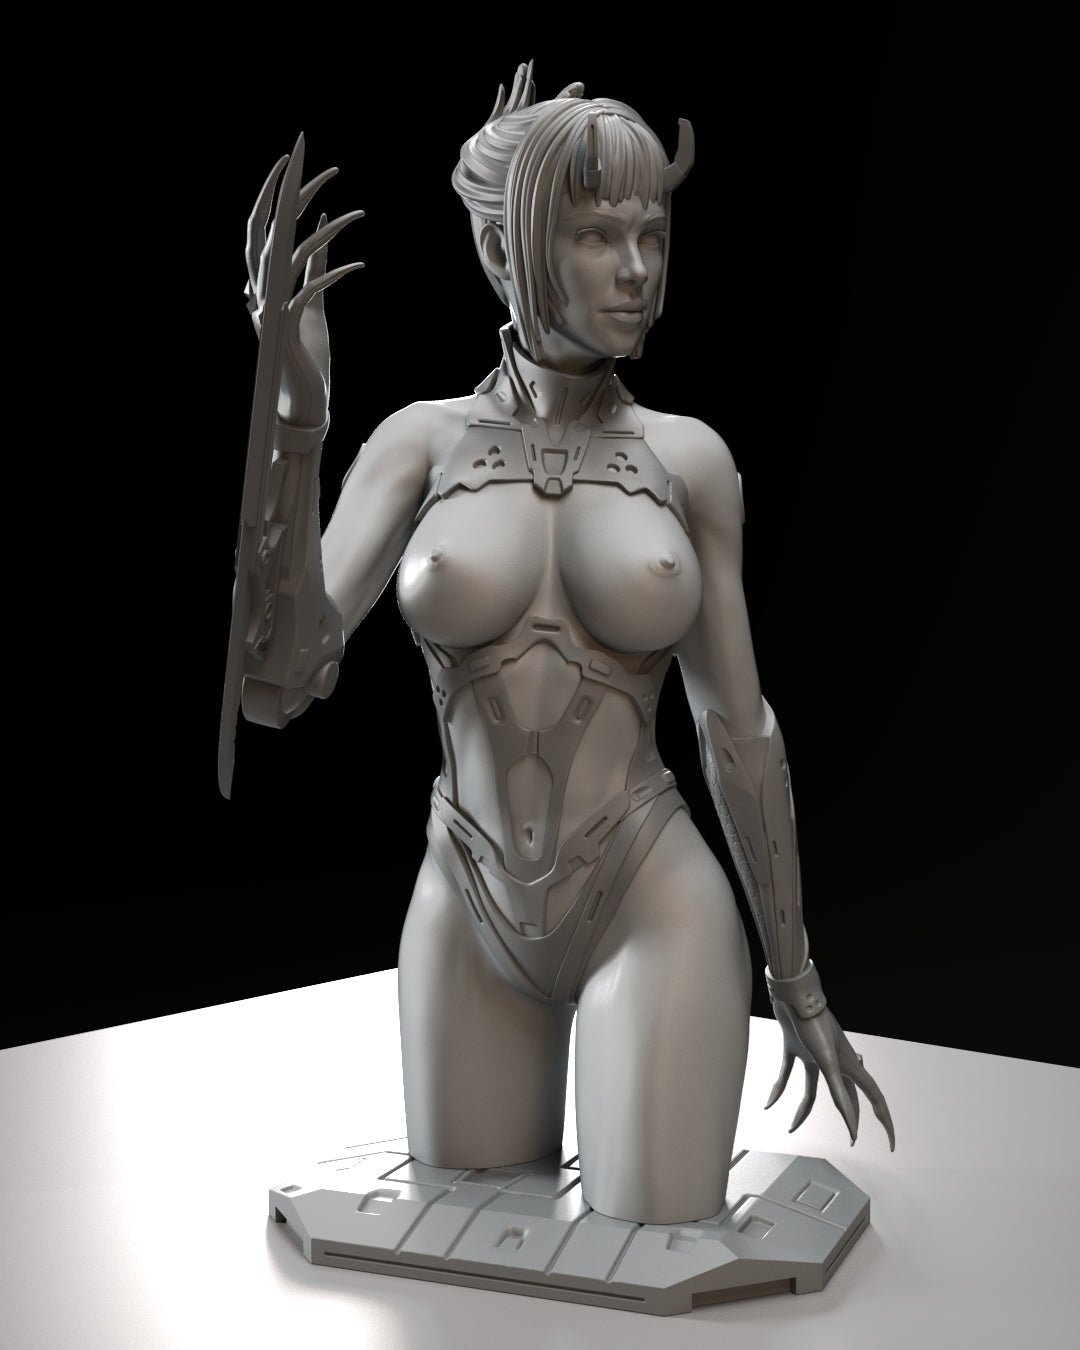 Nakay NSFW BUST | 3D Printed | Fun Art | Figurine by Gsculpt Art